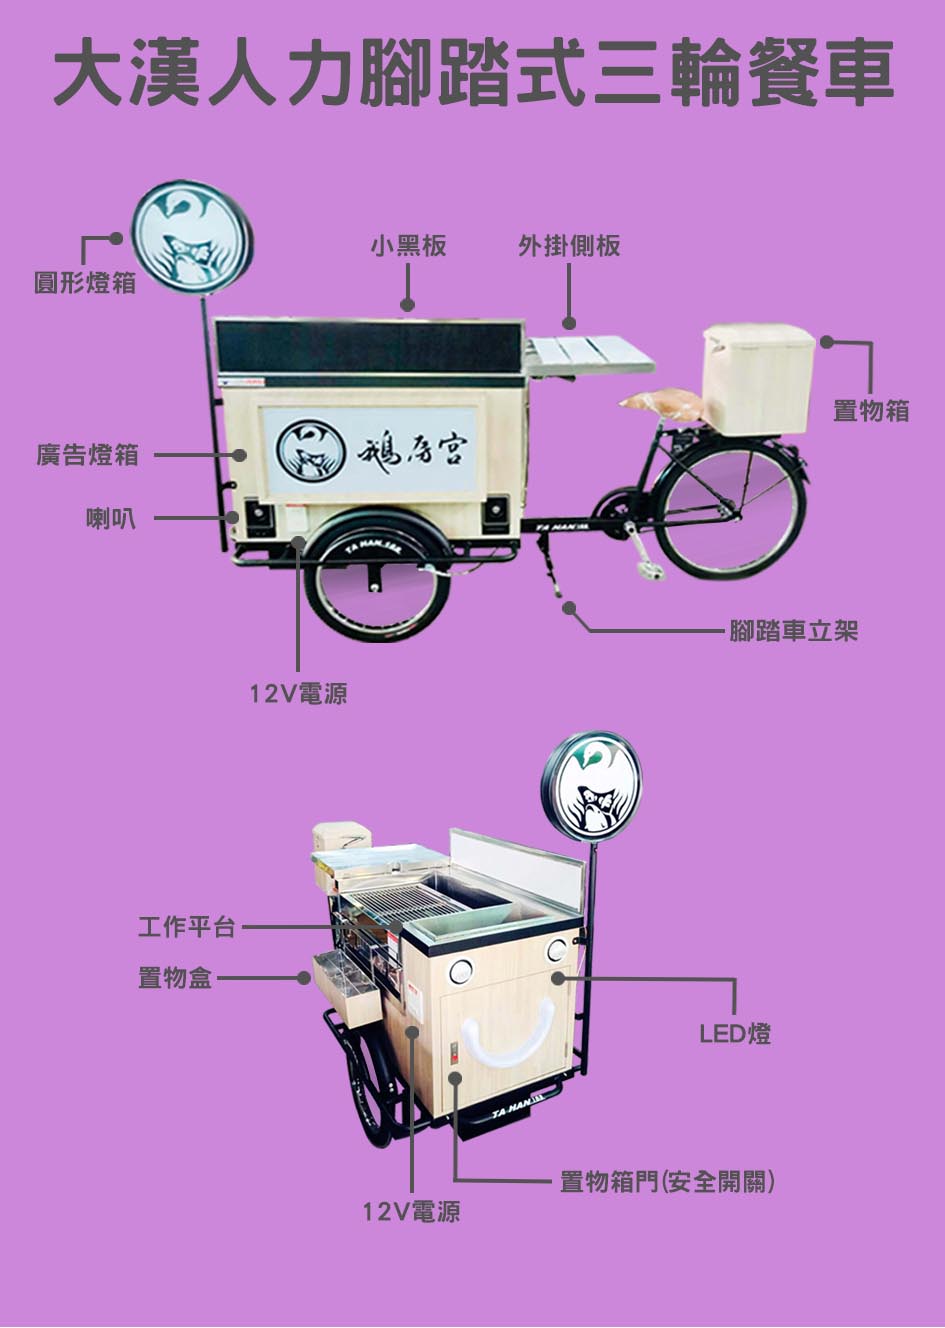 人力腳踏式三輪餐車功能說明表